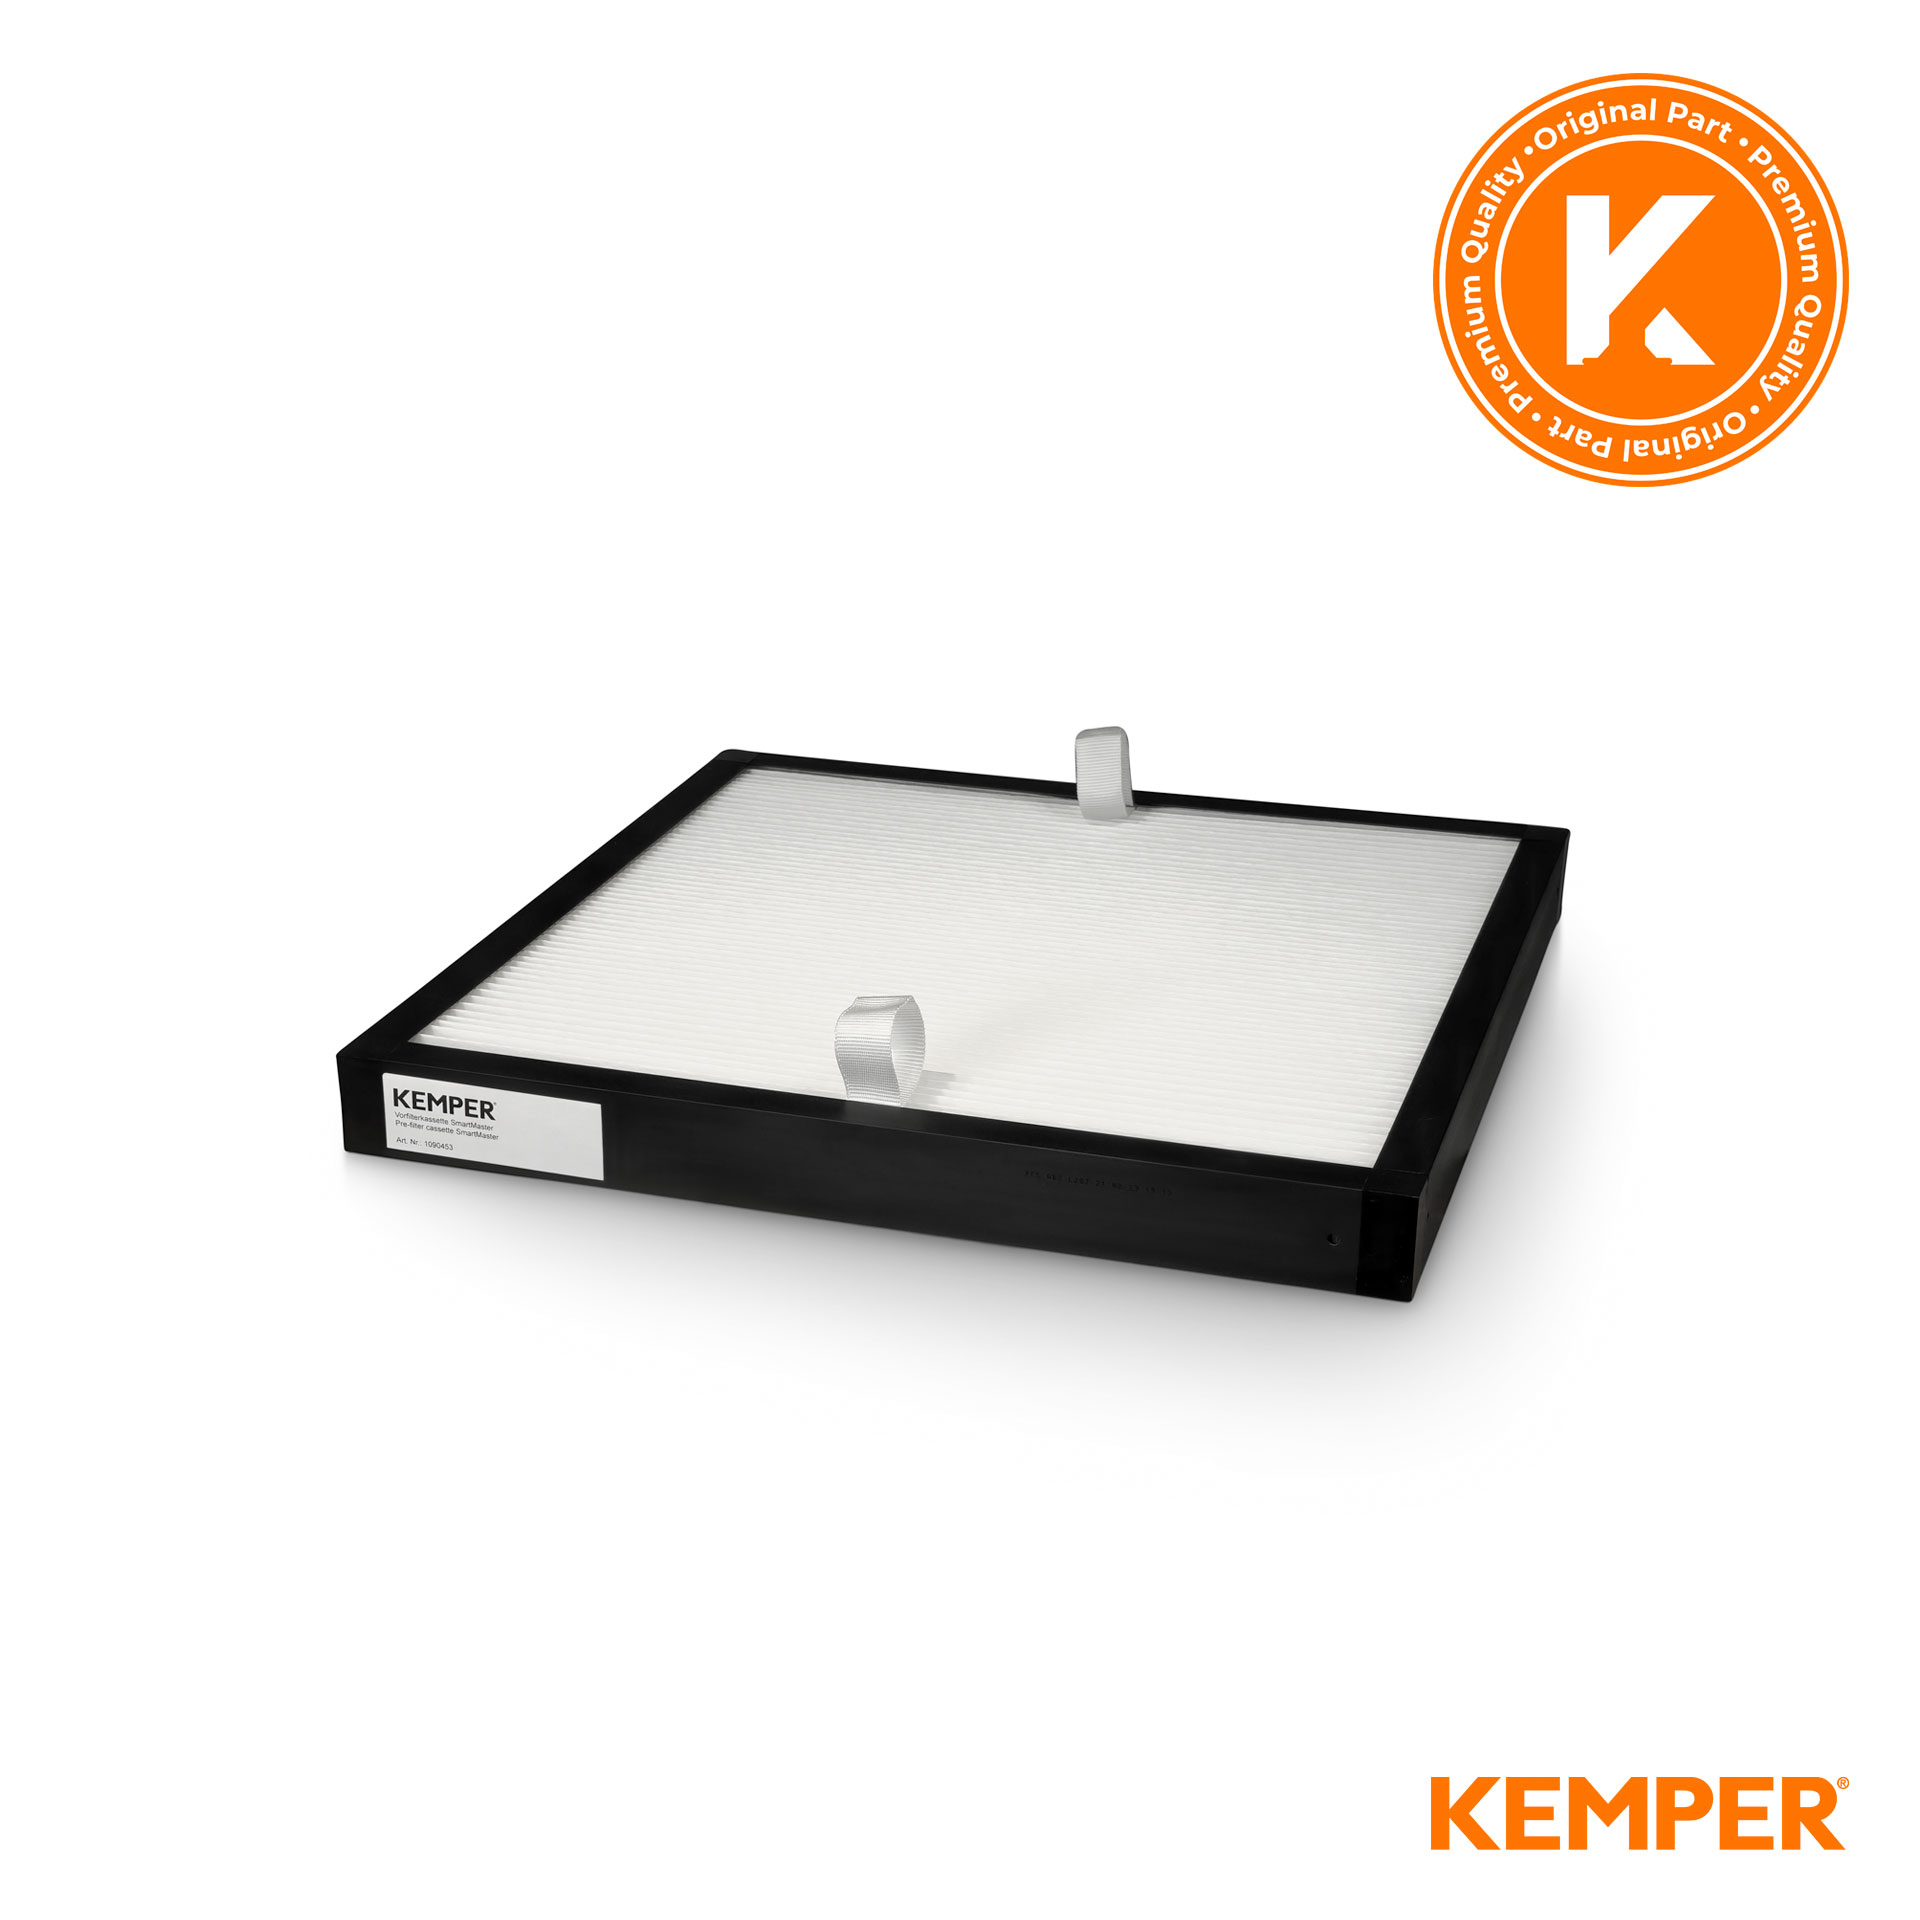 Original KEMPER Vorfilterkassette  für SmartMaster und auch passend für TEKA filtoo - KEMPER HAN: 1090453 - TEKA HAN: 978004 - 481 x 481 x 50 mm\r\n